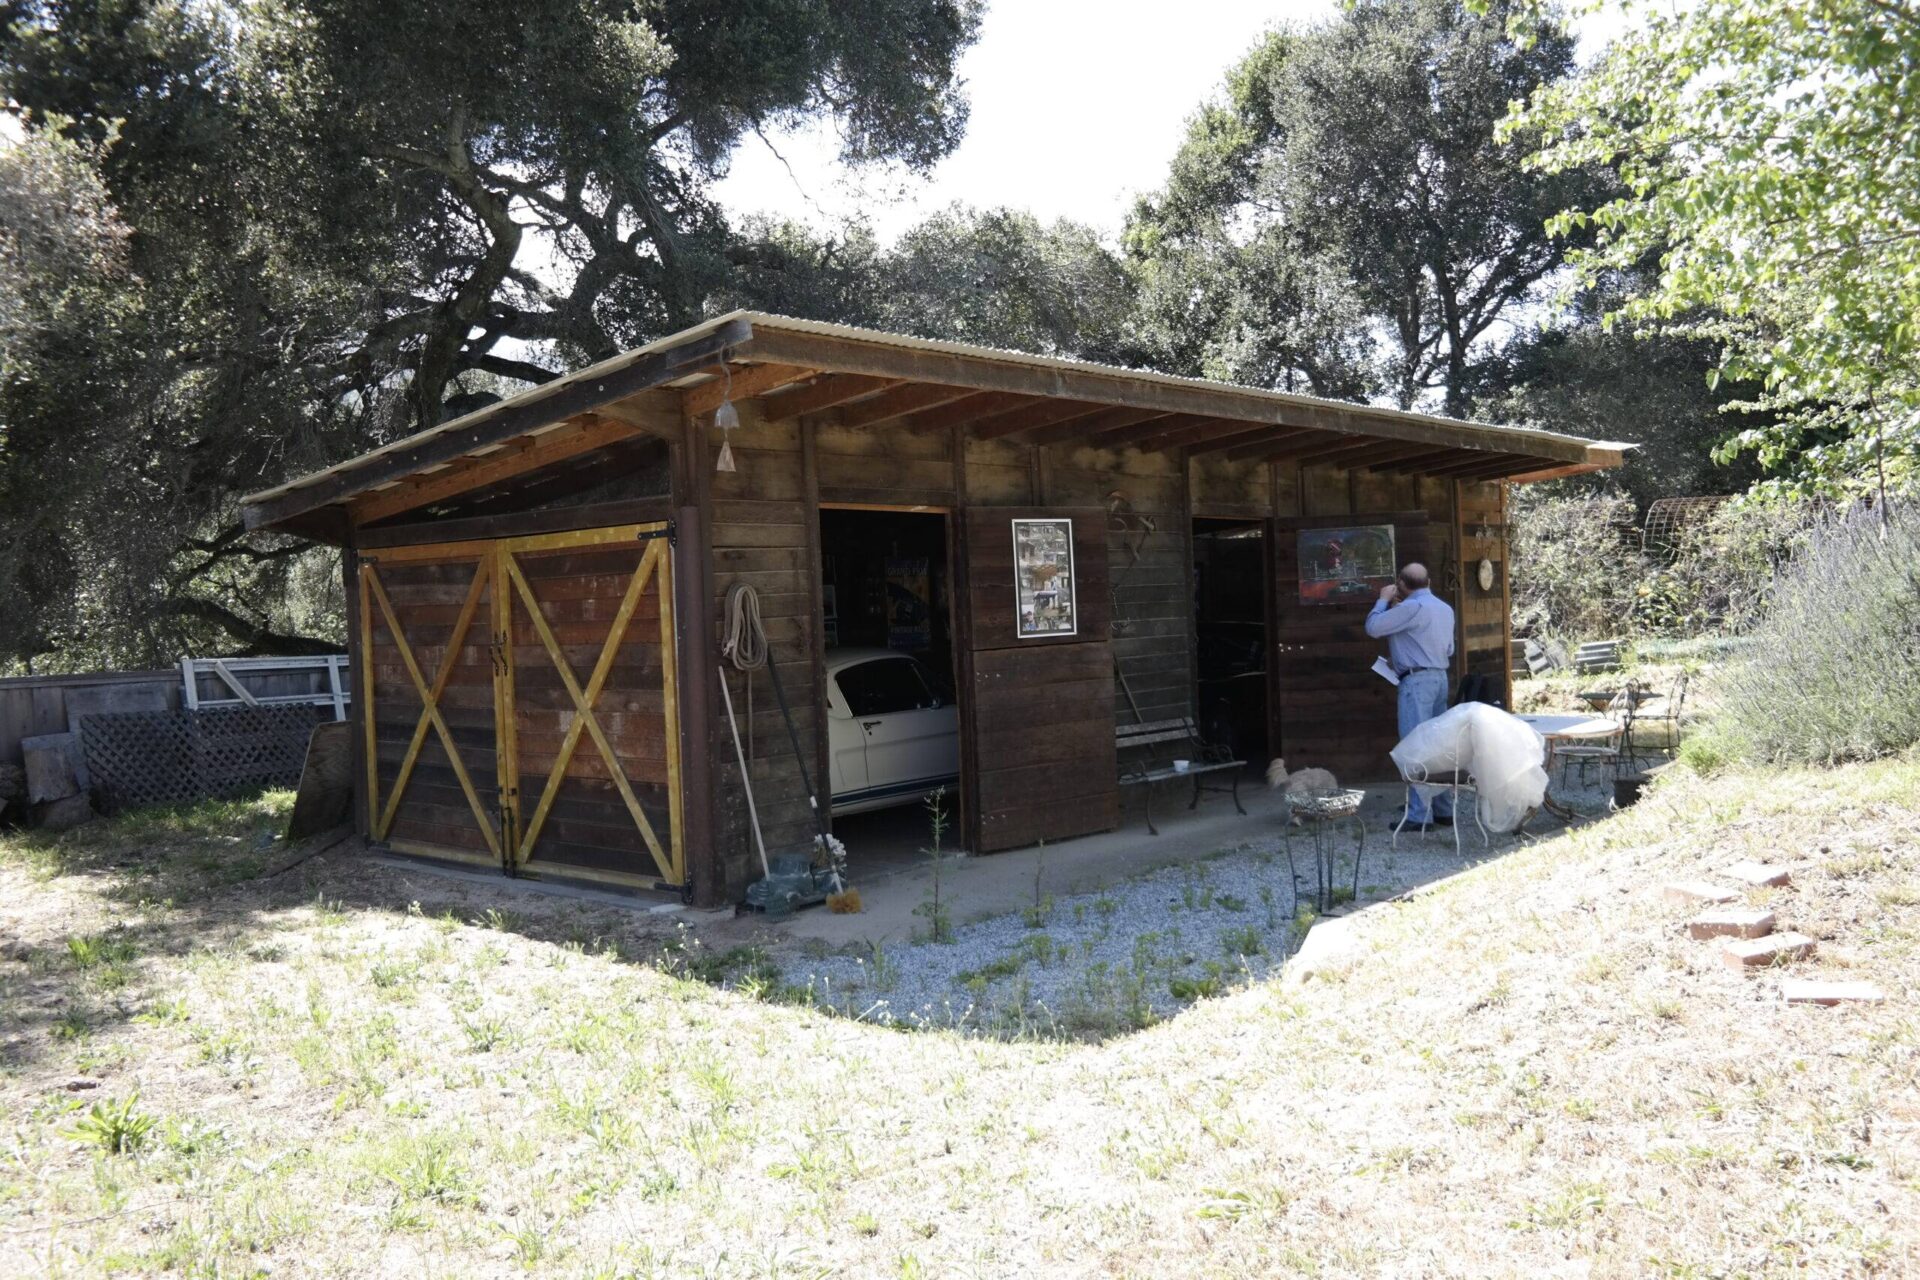 The Shelby Barn of Santa Cruz